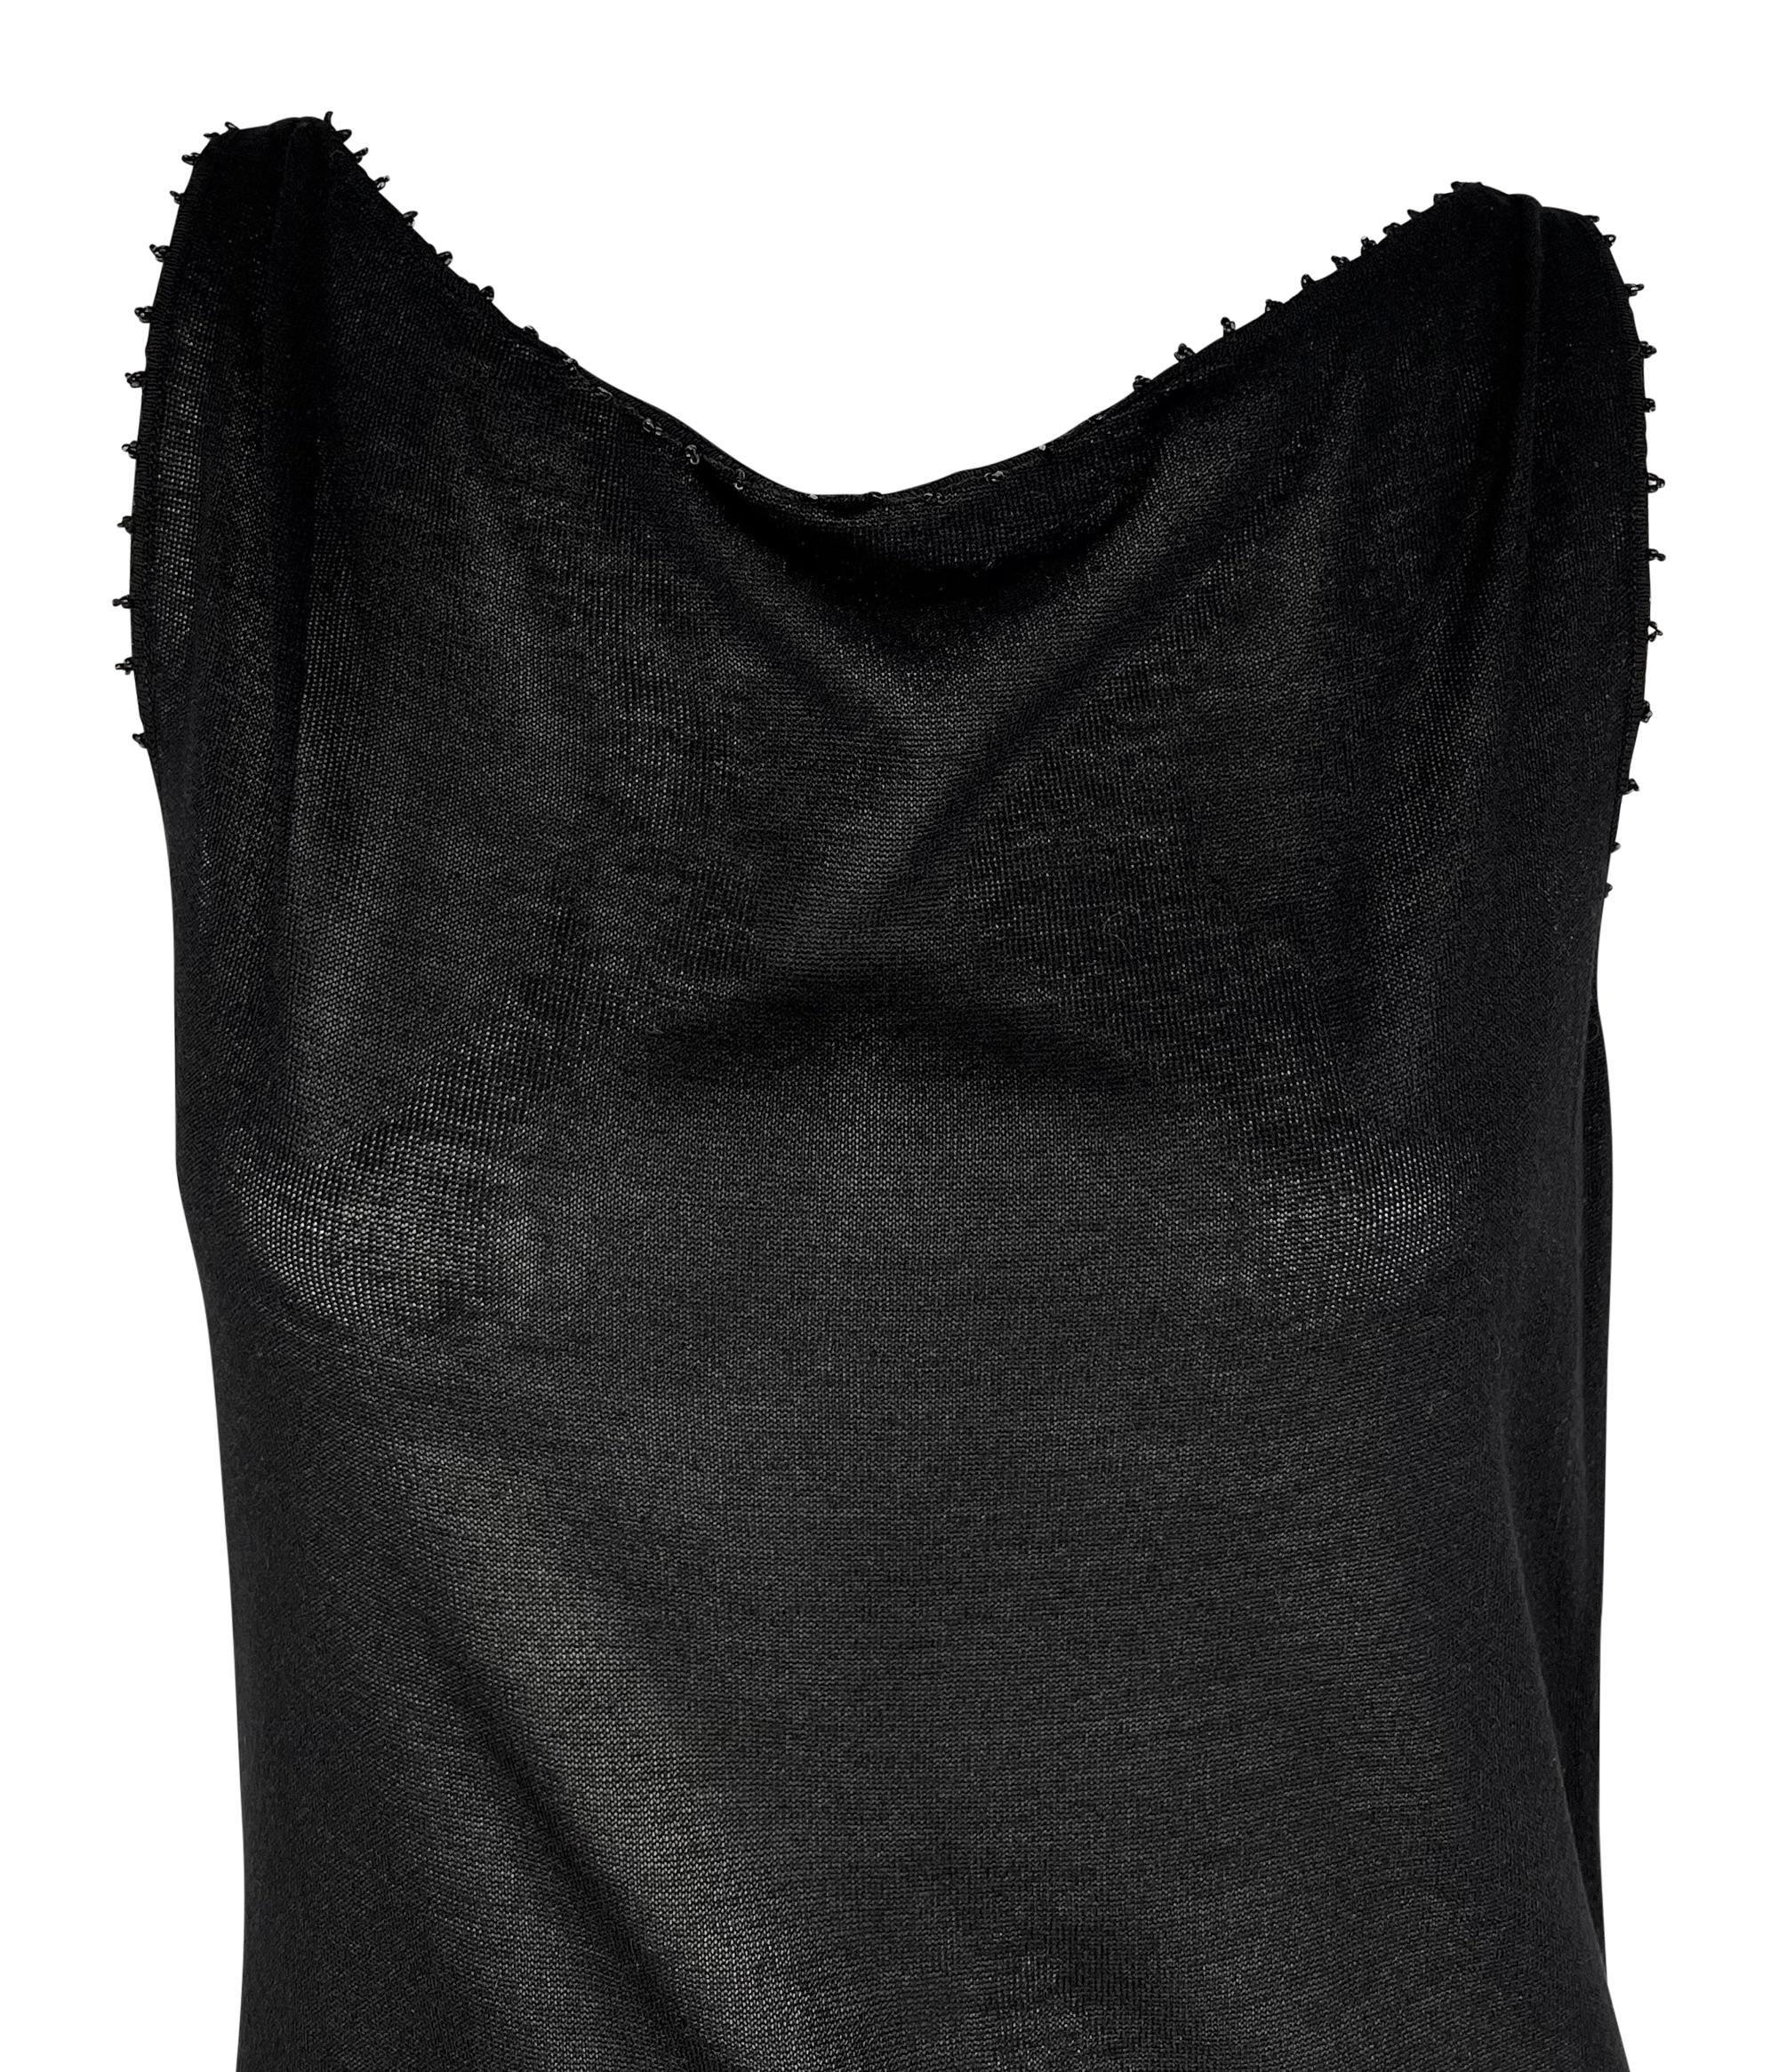 Dieses schwarze Gucci by Tom Ford Strickkleid ist mit schwarzen Kaviarperlen am Halsausschnitt und an den Ärmelöffnungen verziert. Es wurde noch nie getragen und wird mit den Originaletiketten geliefert. Dieses Minikleid aus der